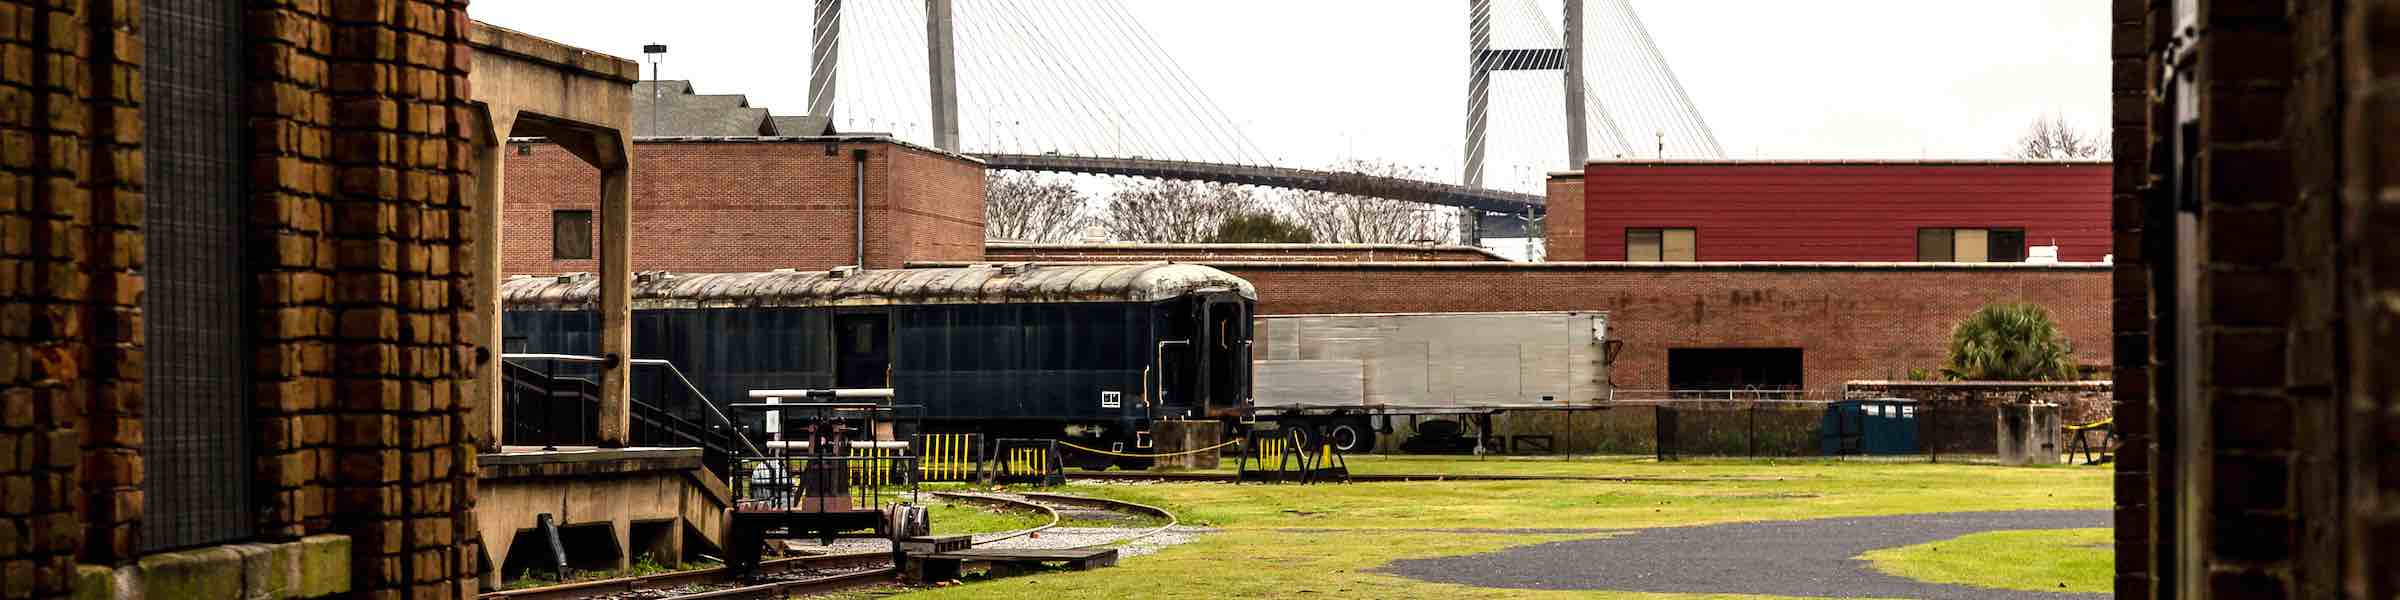 A train seen through an archway at the Georgia State Railroad Museum, Savannah, GA. In the background is the Savannah River Bridge.